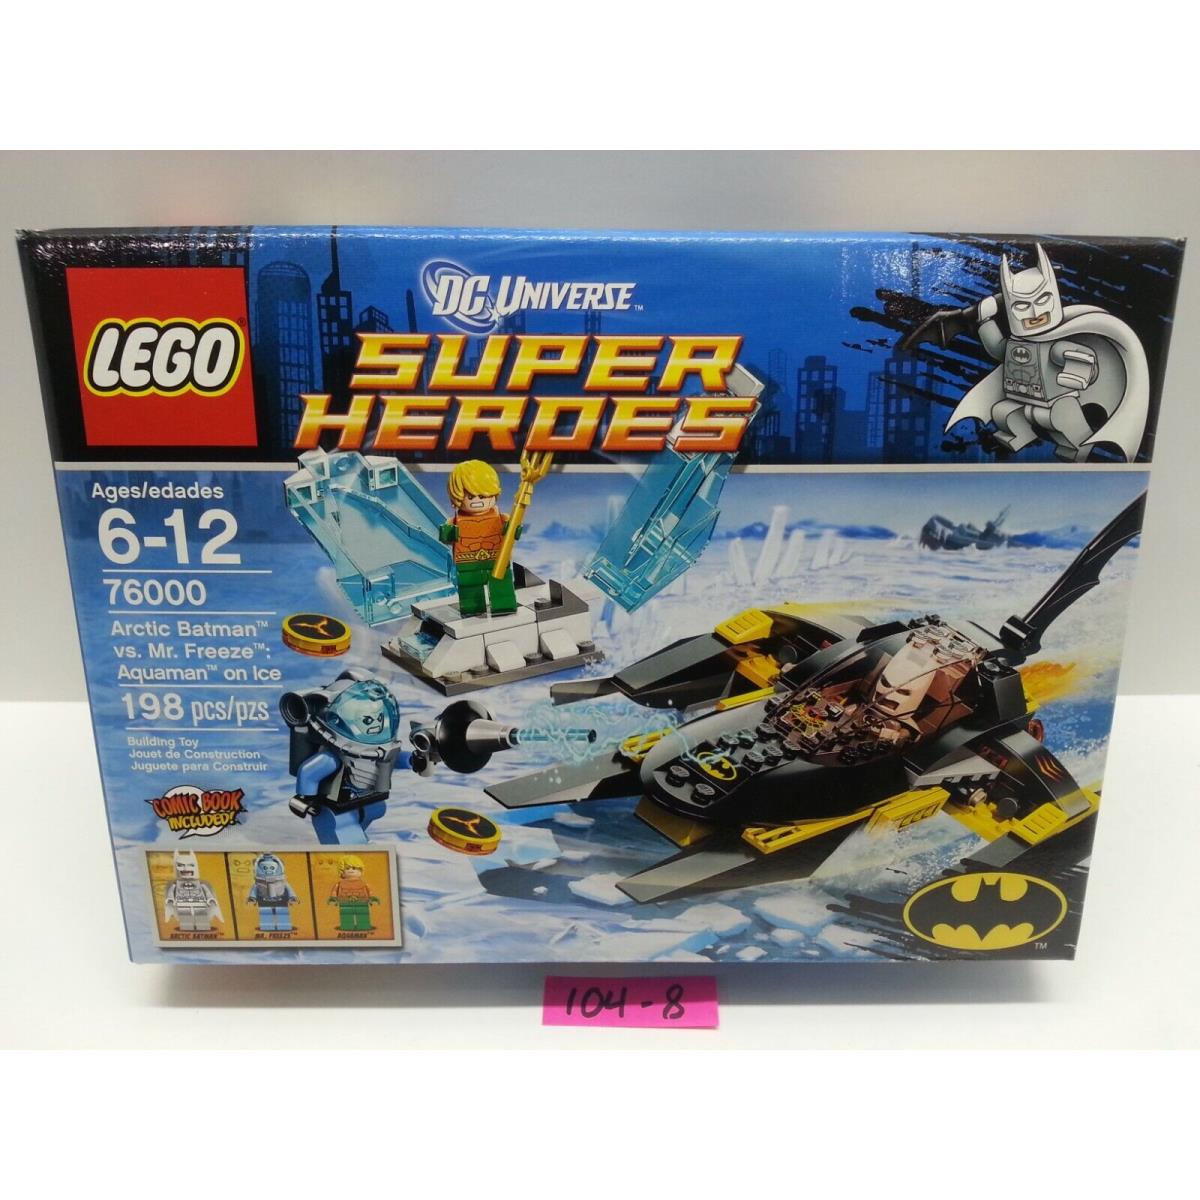 Lego 76000 - Super Heroes - Arctic Batman Vs. Mr Freeze: Aquaman on Ice